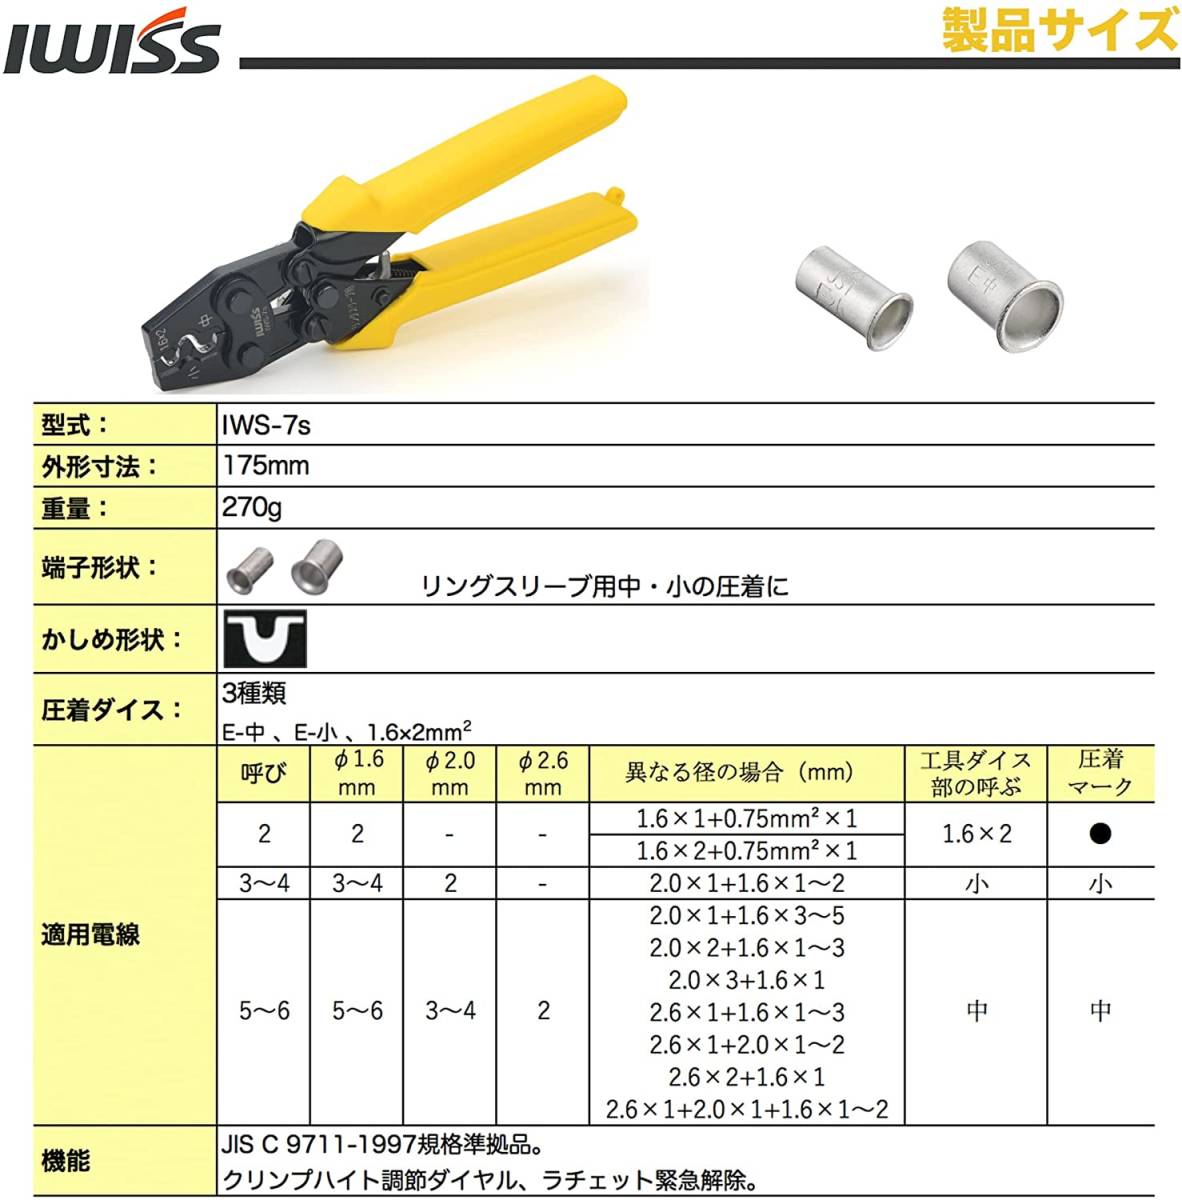 ☆正規品☆ アイウィス(IWISS) リングスリーブ 圧着工具 JIS準拠品 ラチェット式 小(1.6x2)・小・中用 IWS-7s_画像5